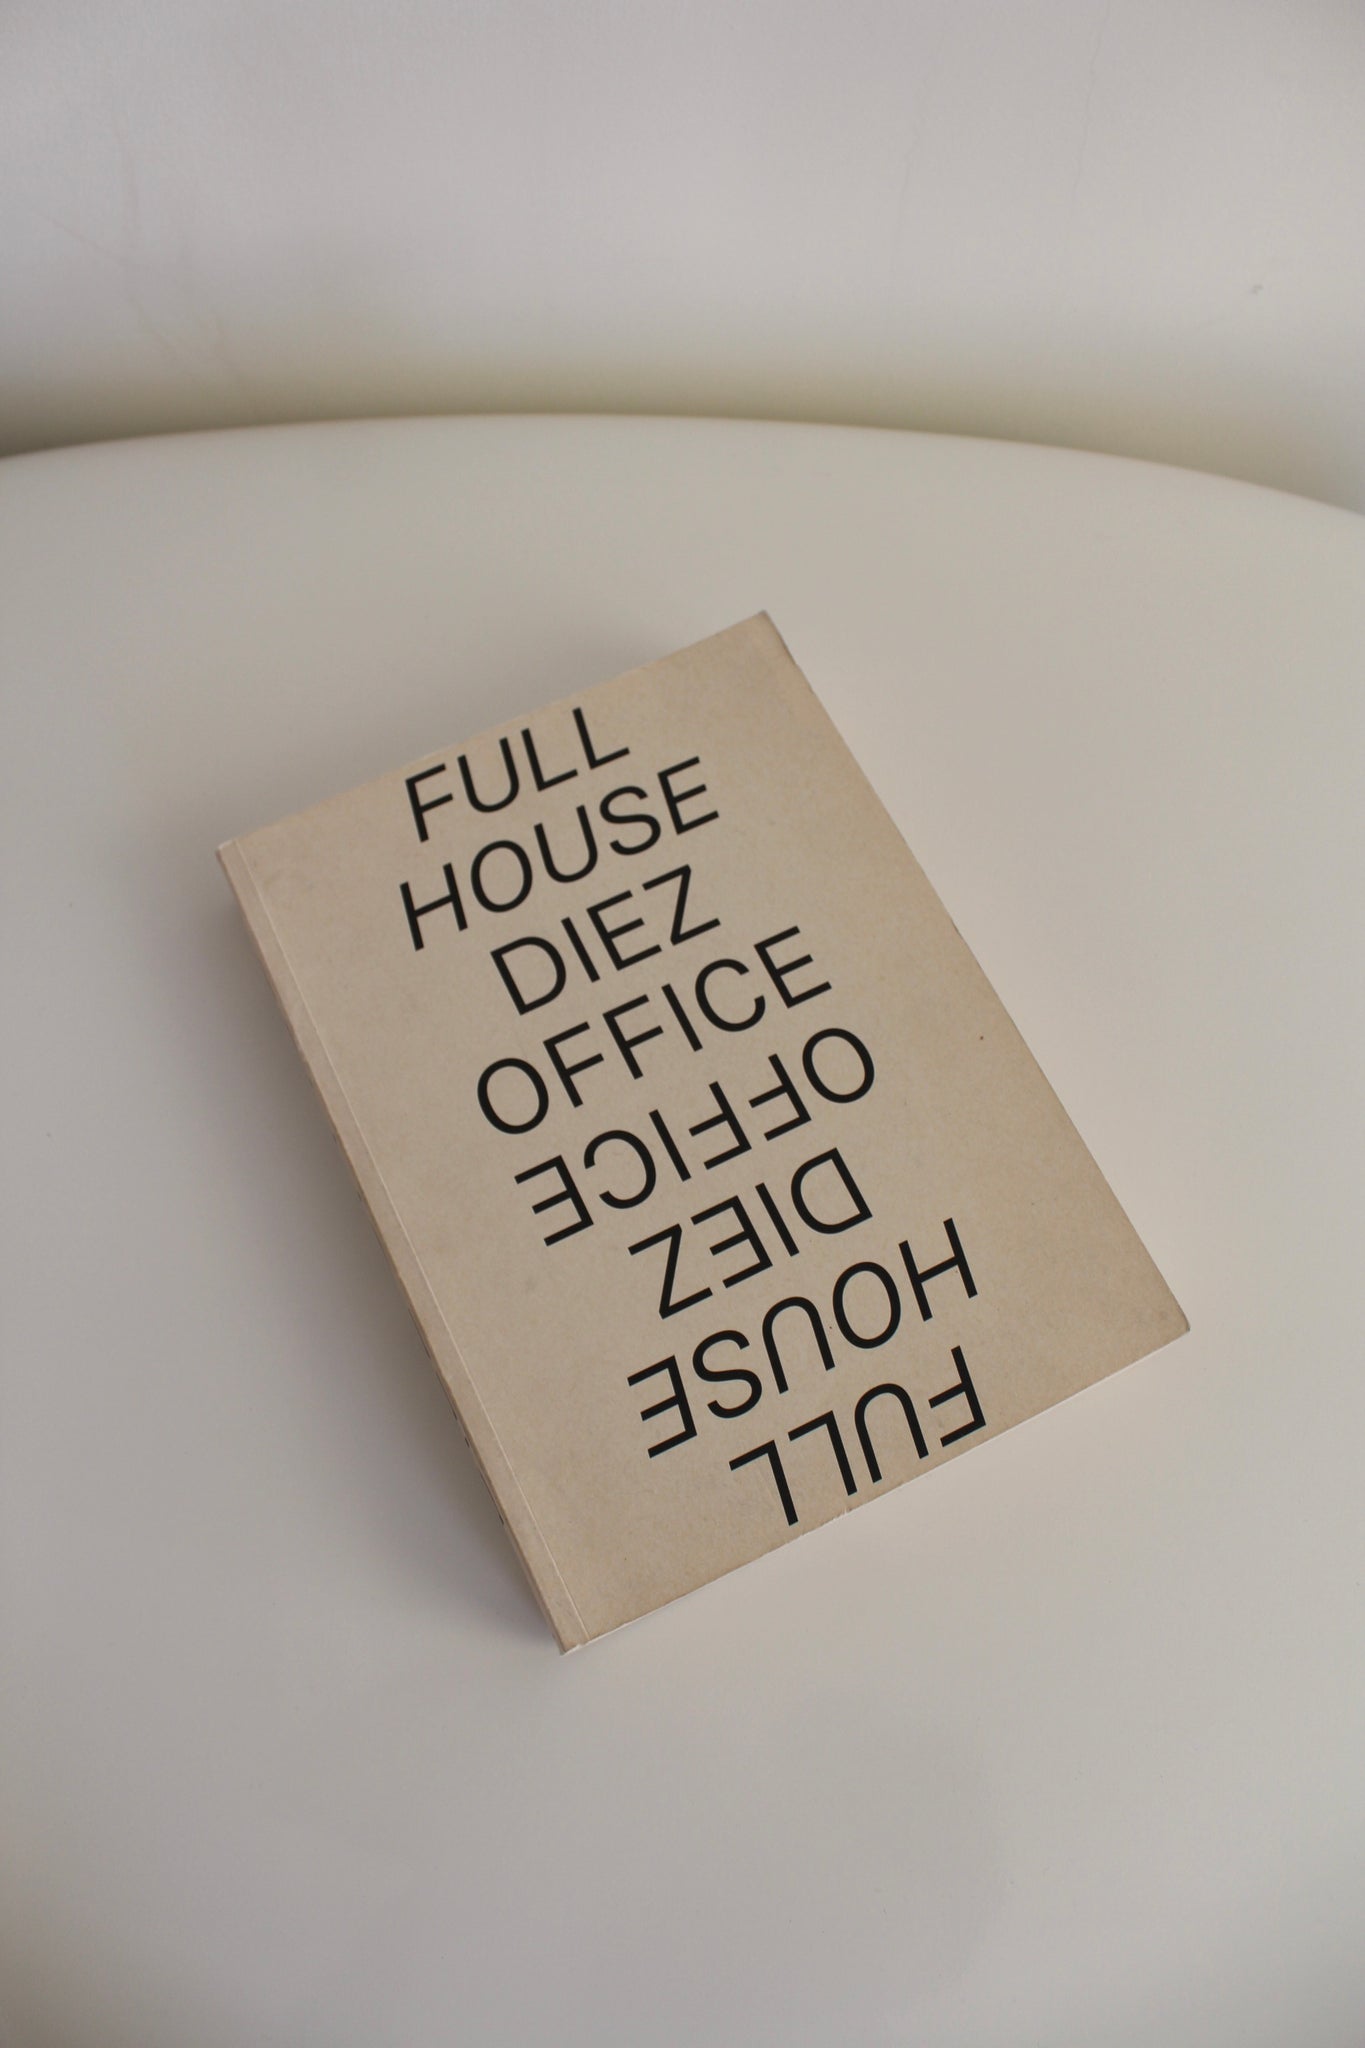 Diez Office: Full House, Sandra Hofmeister & Stefan Diez, 2017